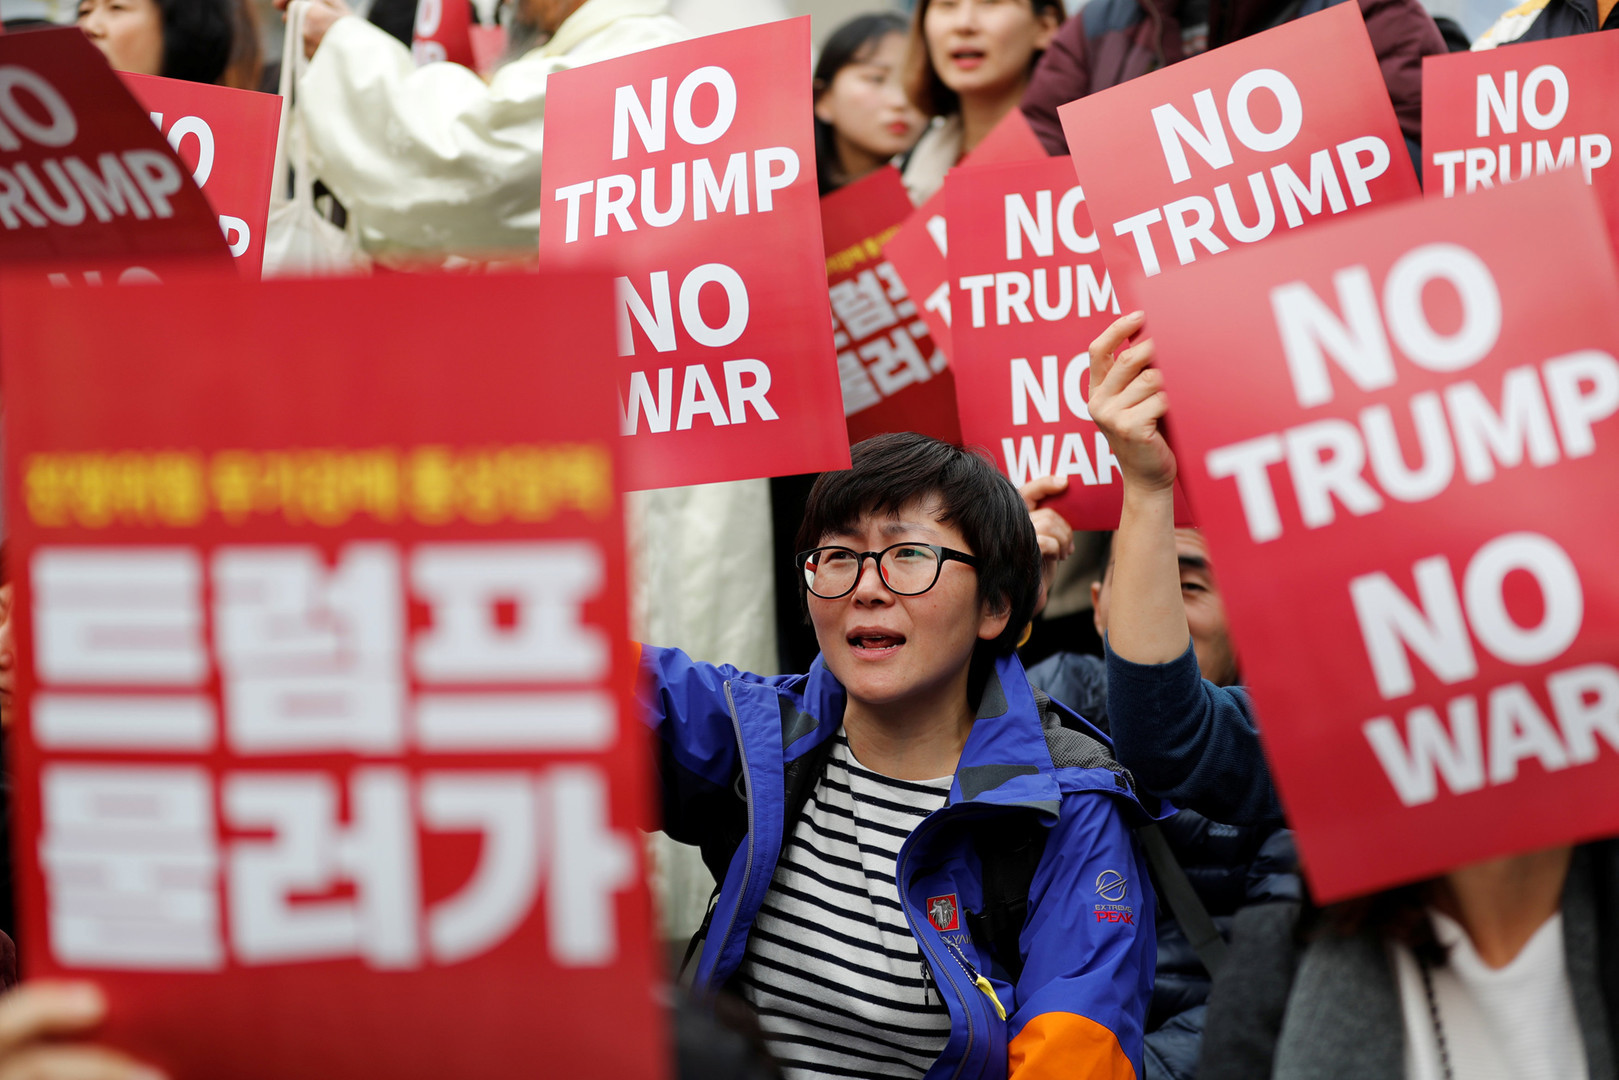 Estados Unidos: Trump visita Corea de Sur y el país se muestra dividido en marchas a favor y en contra (FOTOS)